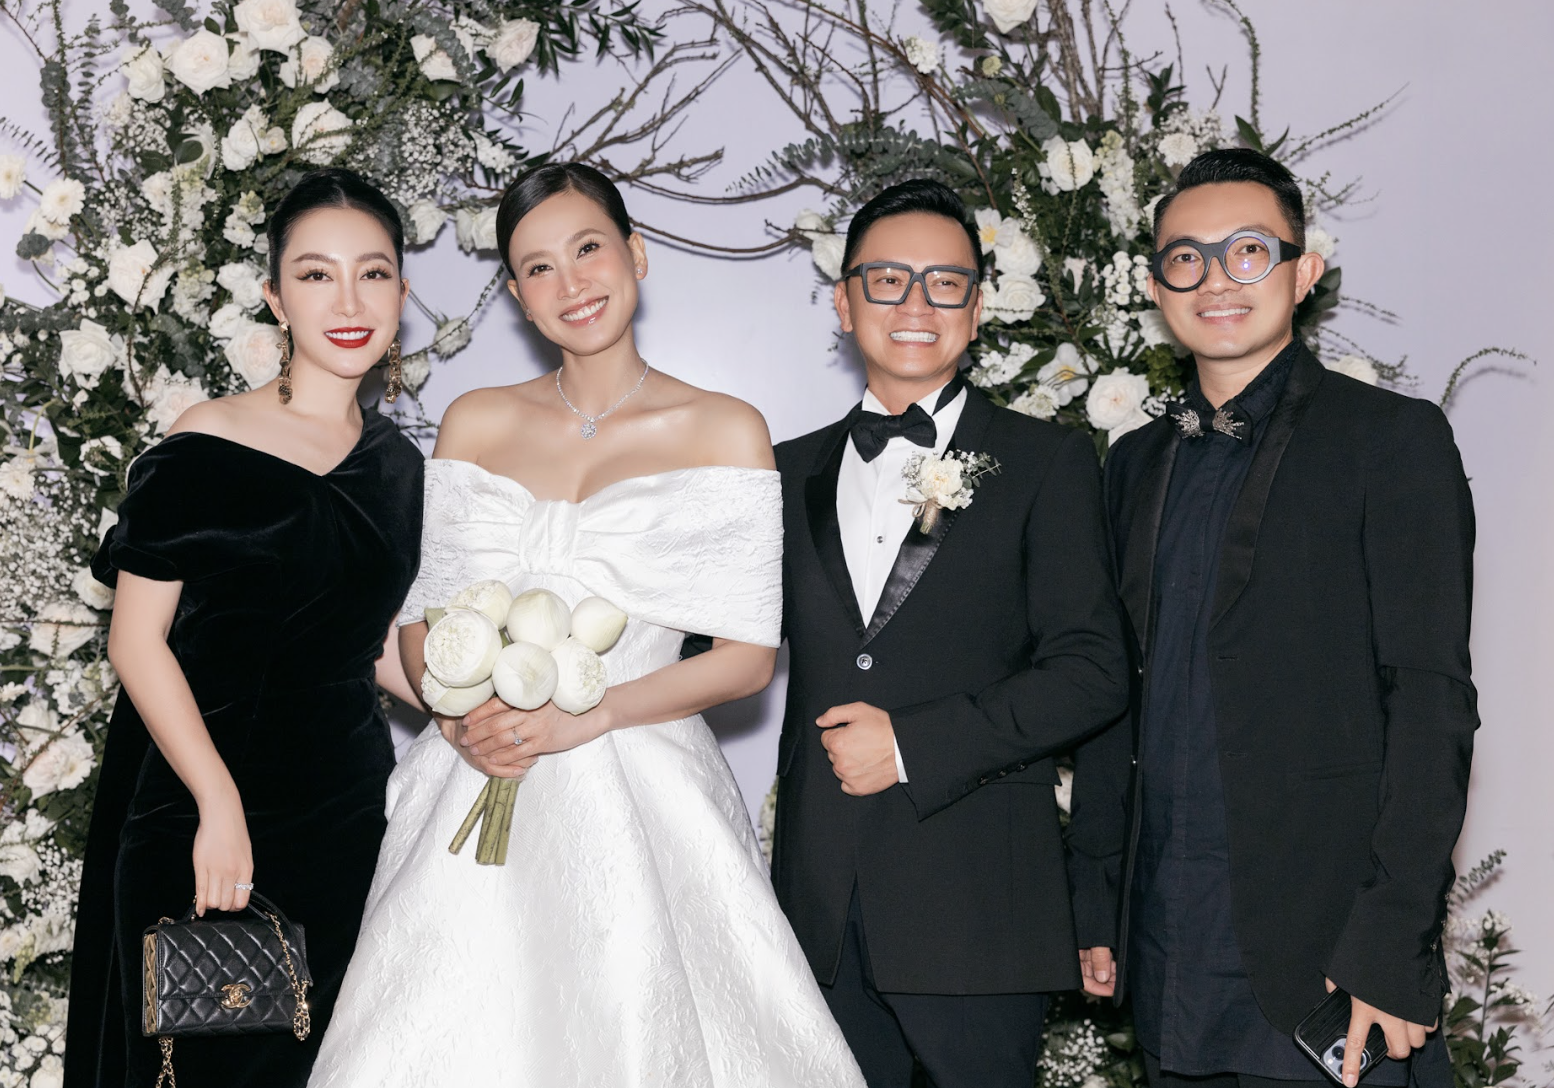 Đám cưới của Dương Mỹ Linh: Chỉ có khoảng 60 khách mời, Hoa hậu Hà Kiều Anh cùng dàn sao tham dự - Ảnh 8.